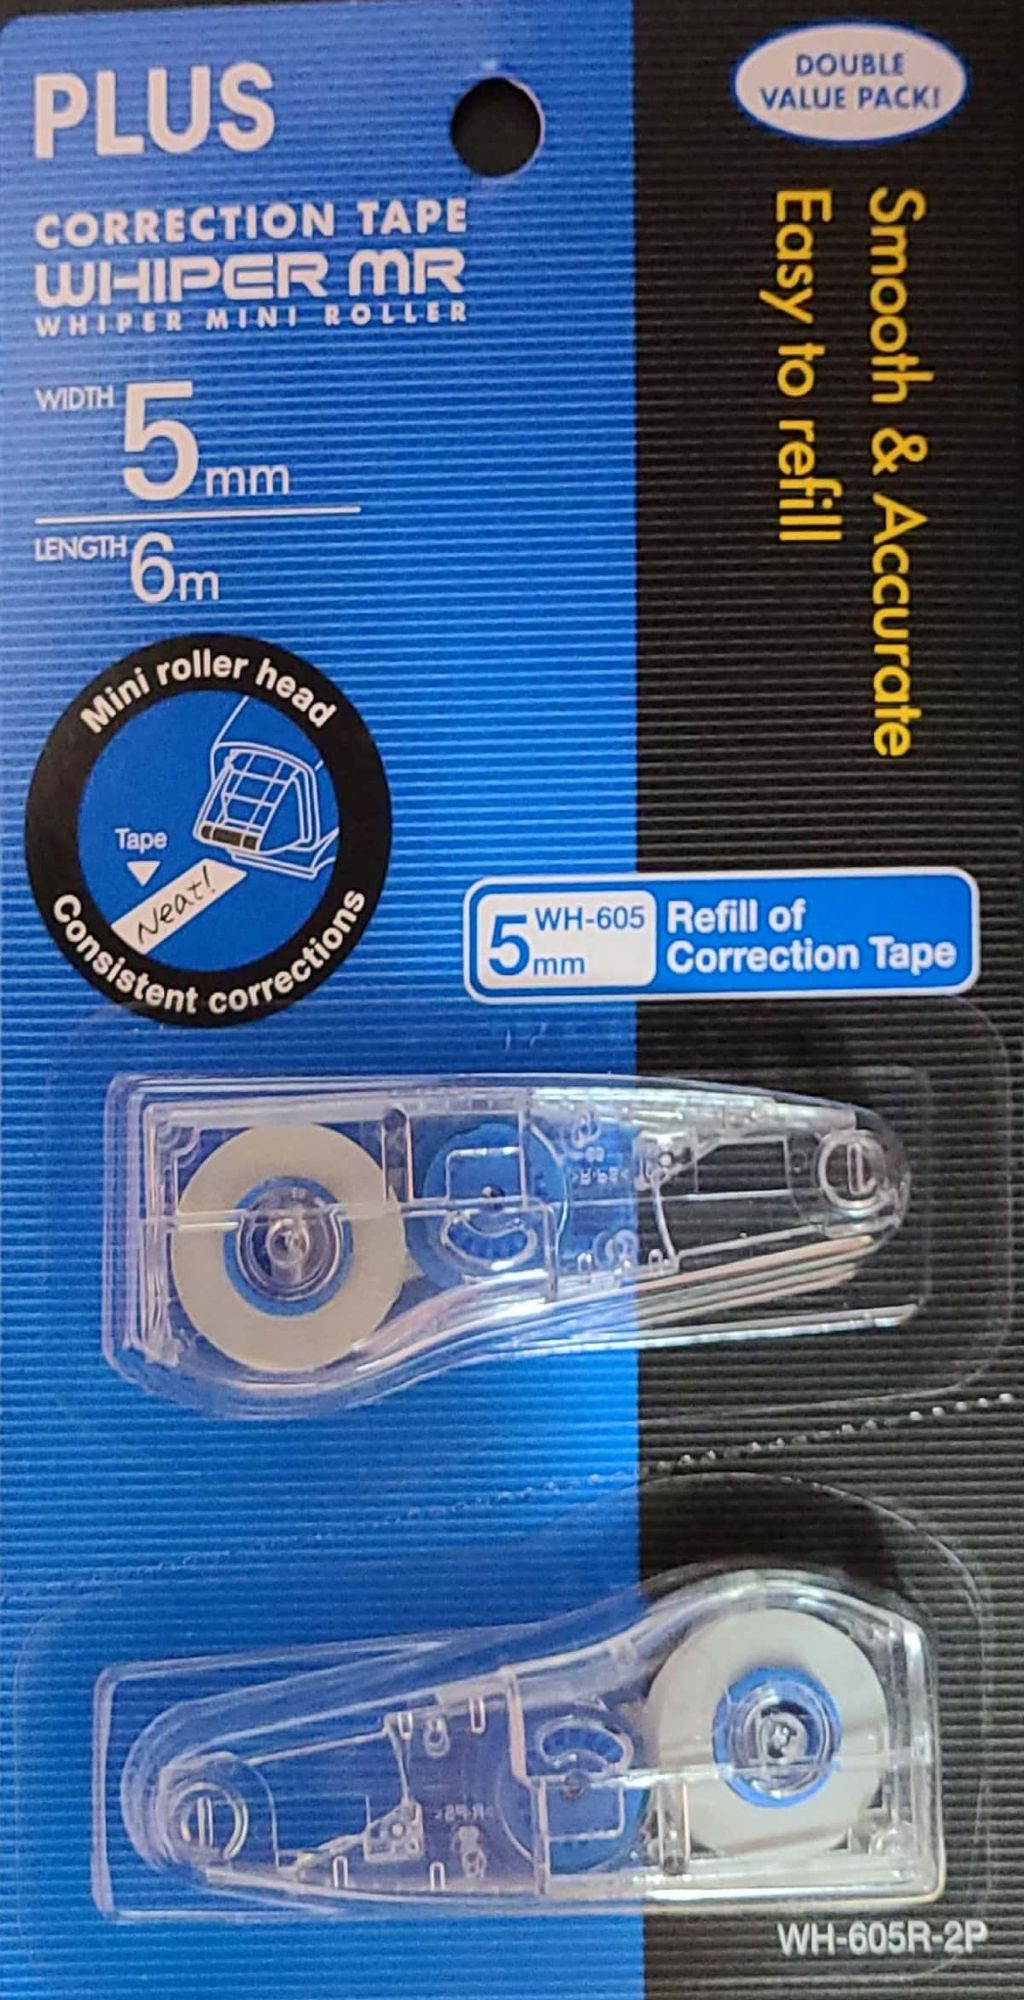 CamScanner 01-05-2022 09.14_3_PLUS correction tape (refill) RM7.90.jpg